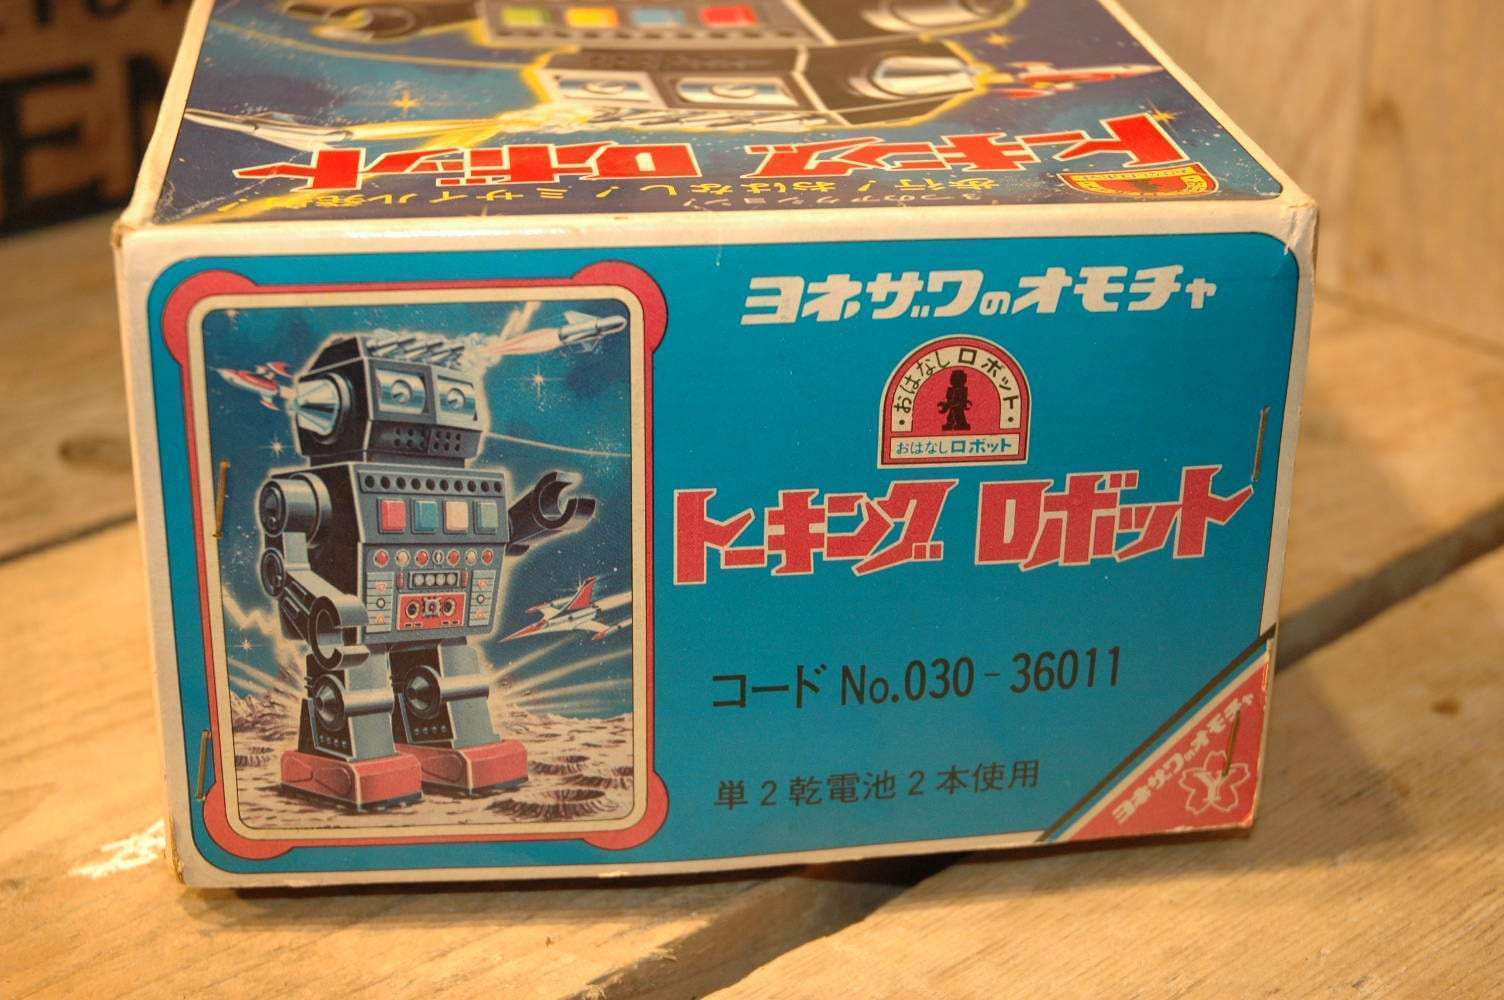 Yonezawa - Talking Robot ( Prototype )